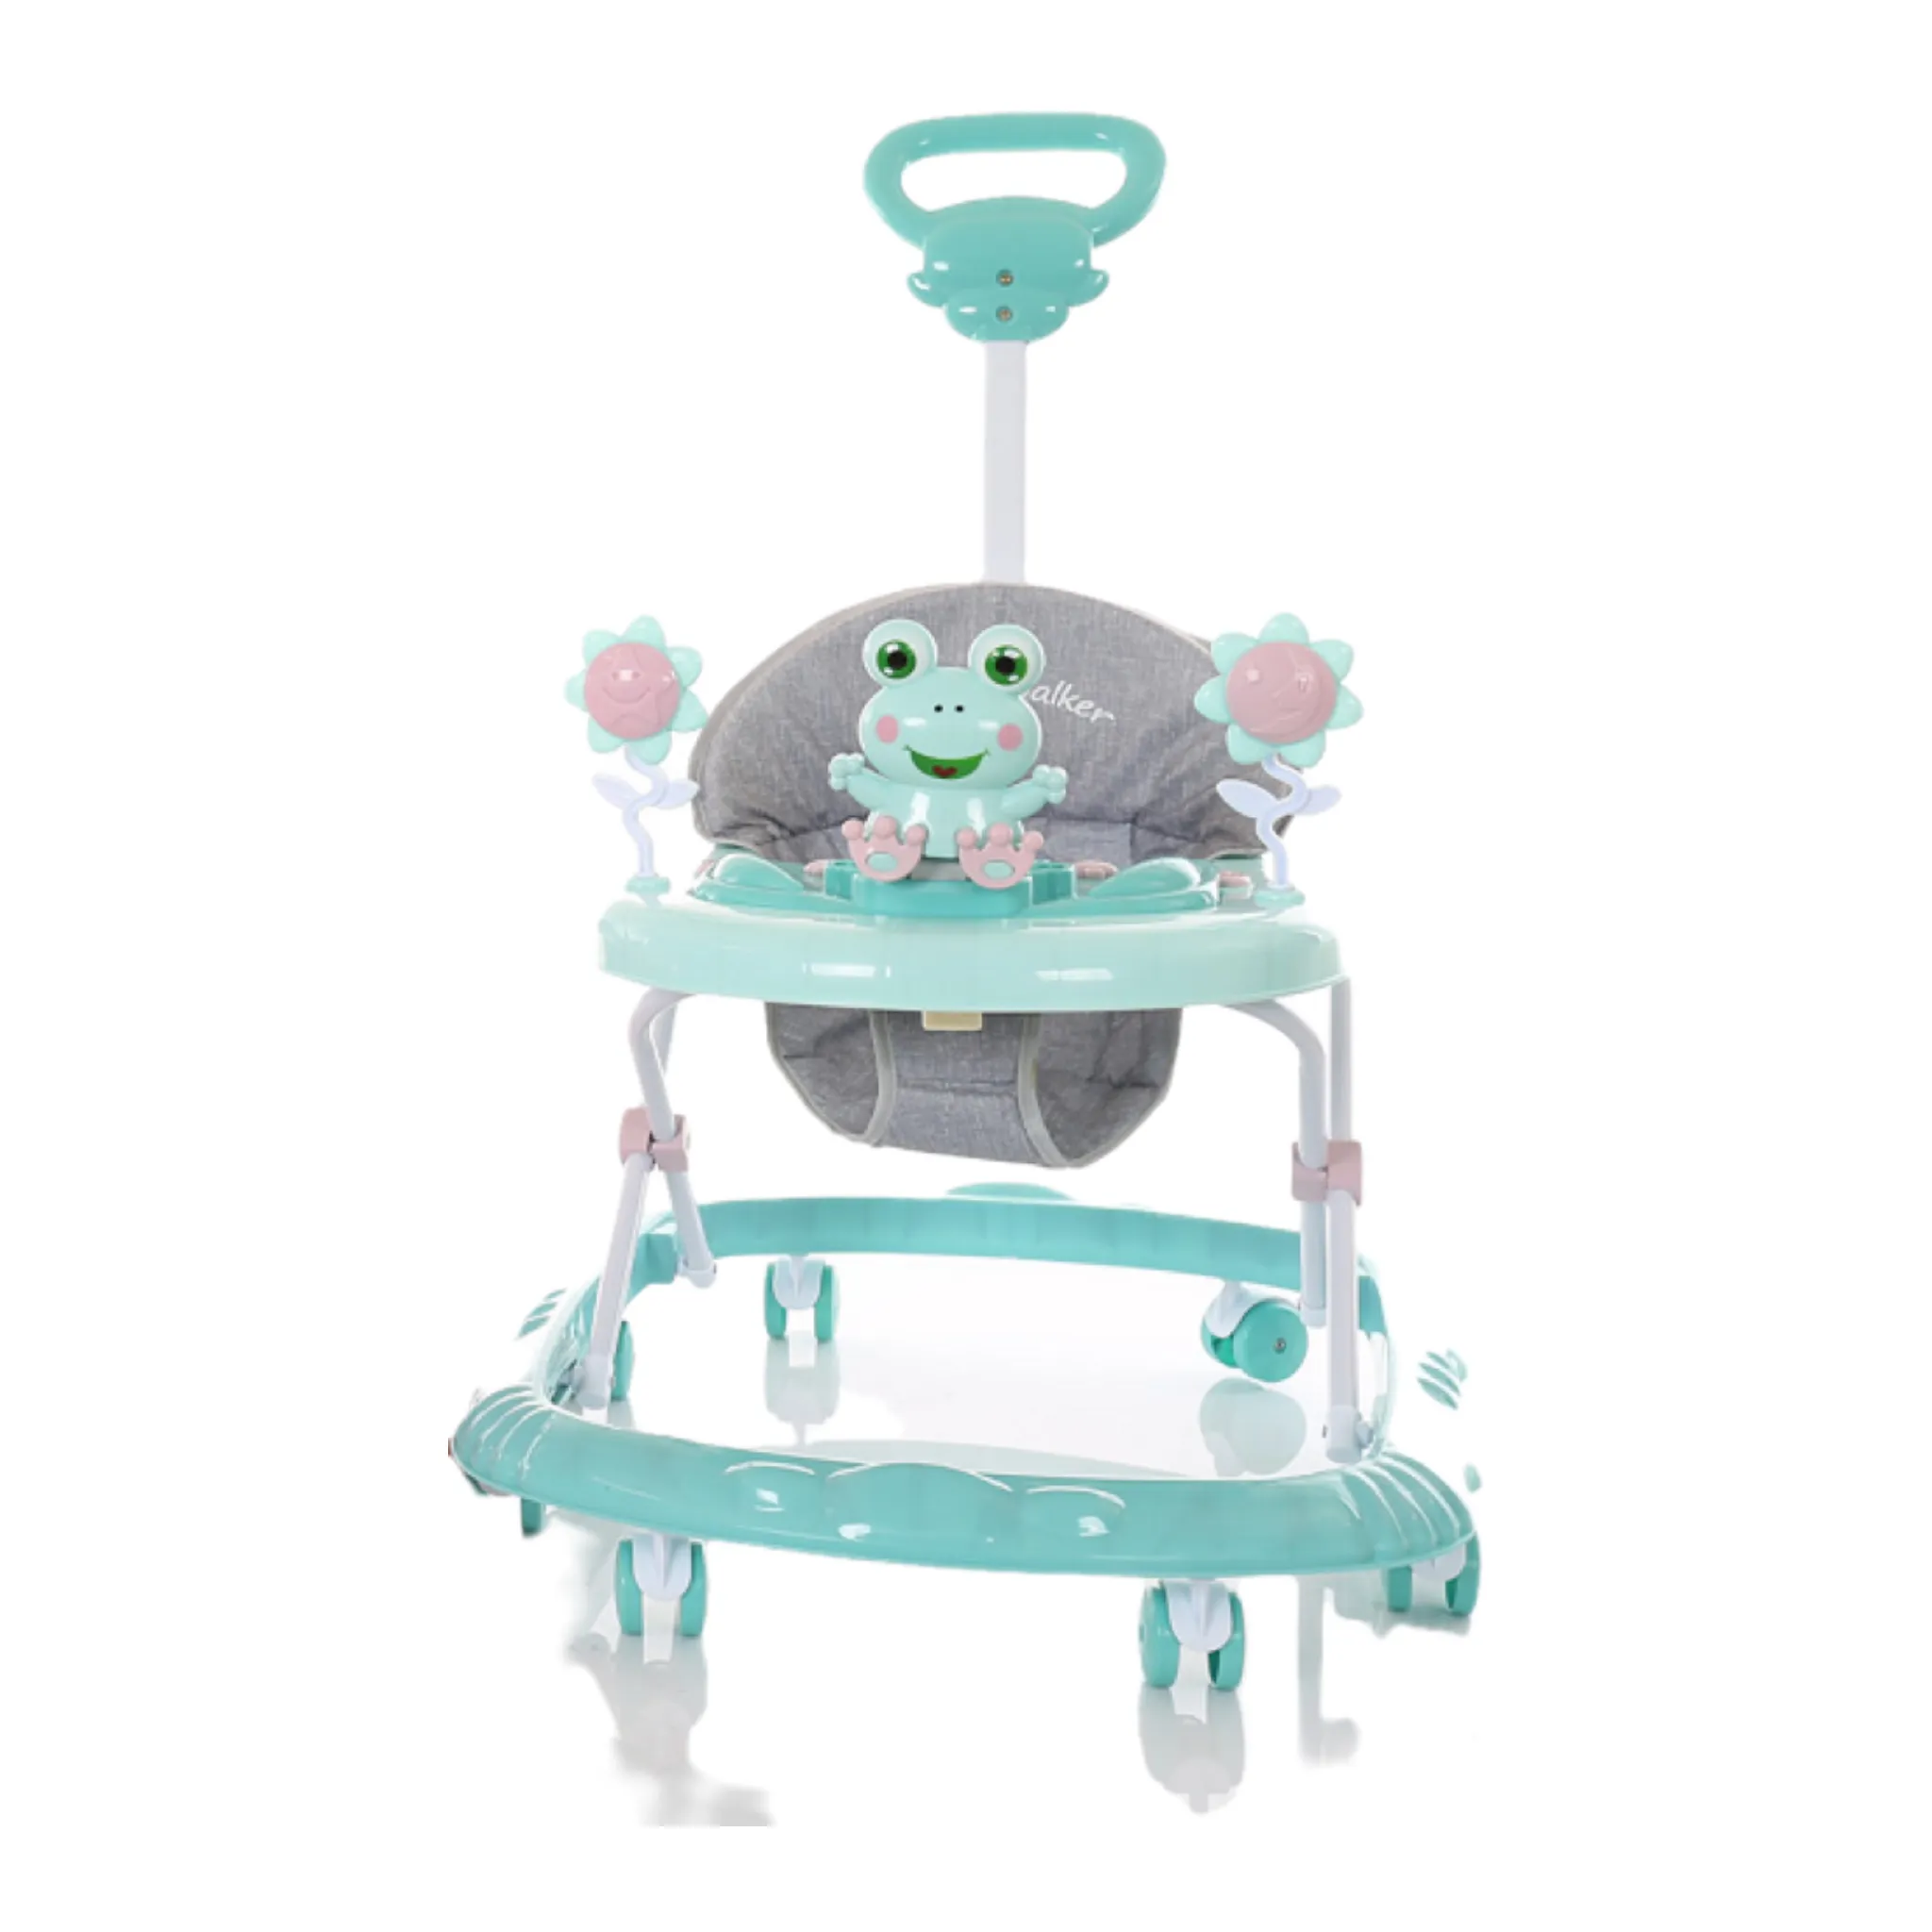 Toptan ucuz fiyat basit tip bebek yürüteci eko PP malzeme bebek yürüyüş sandalyeler güzel ic müzik kutusu